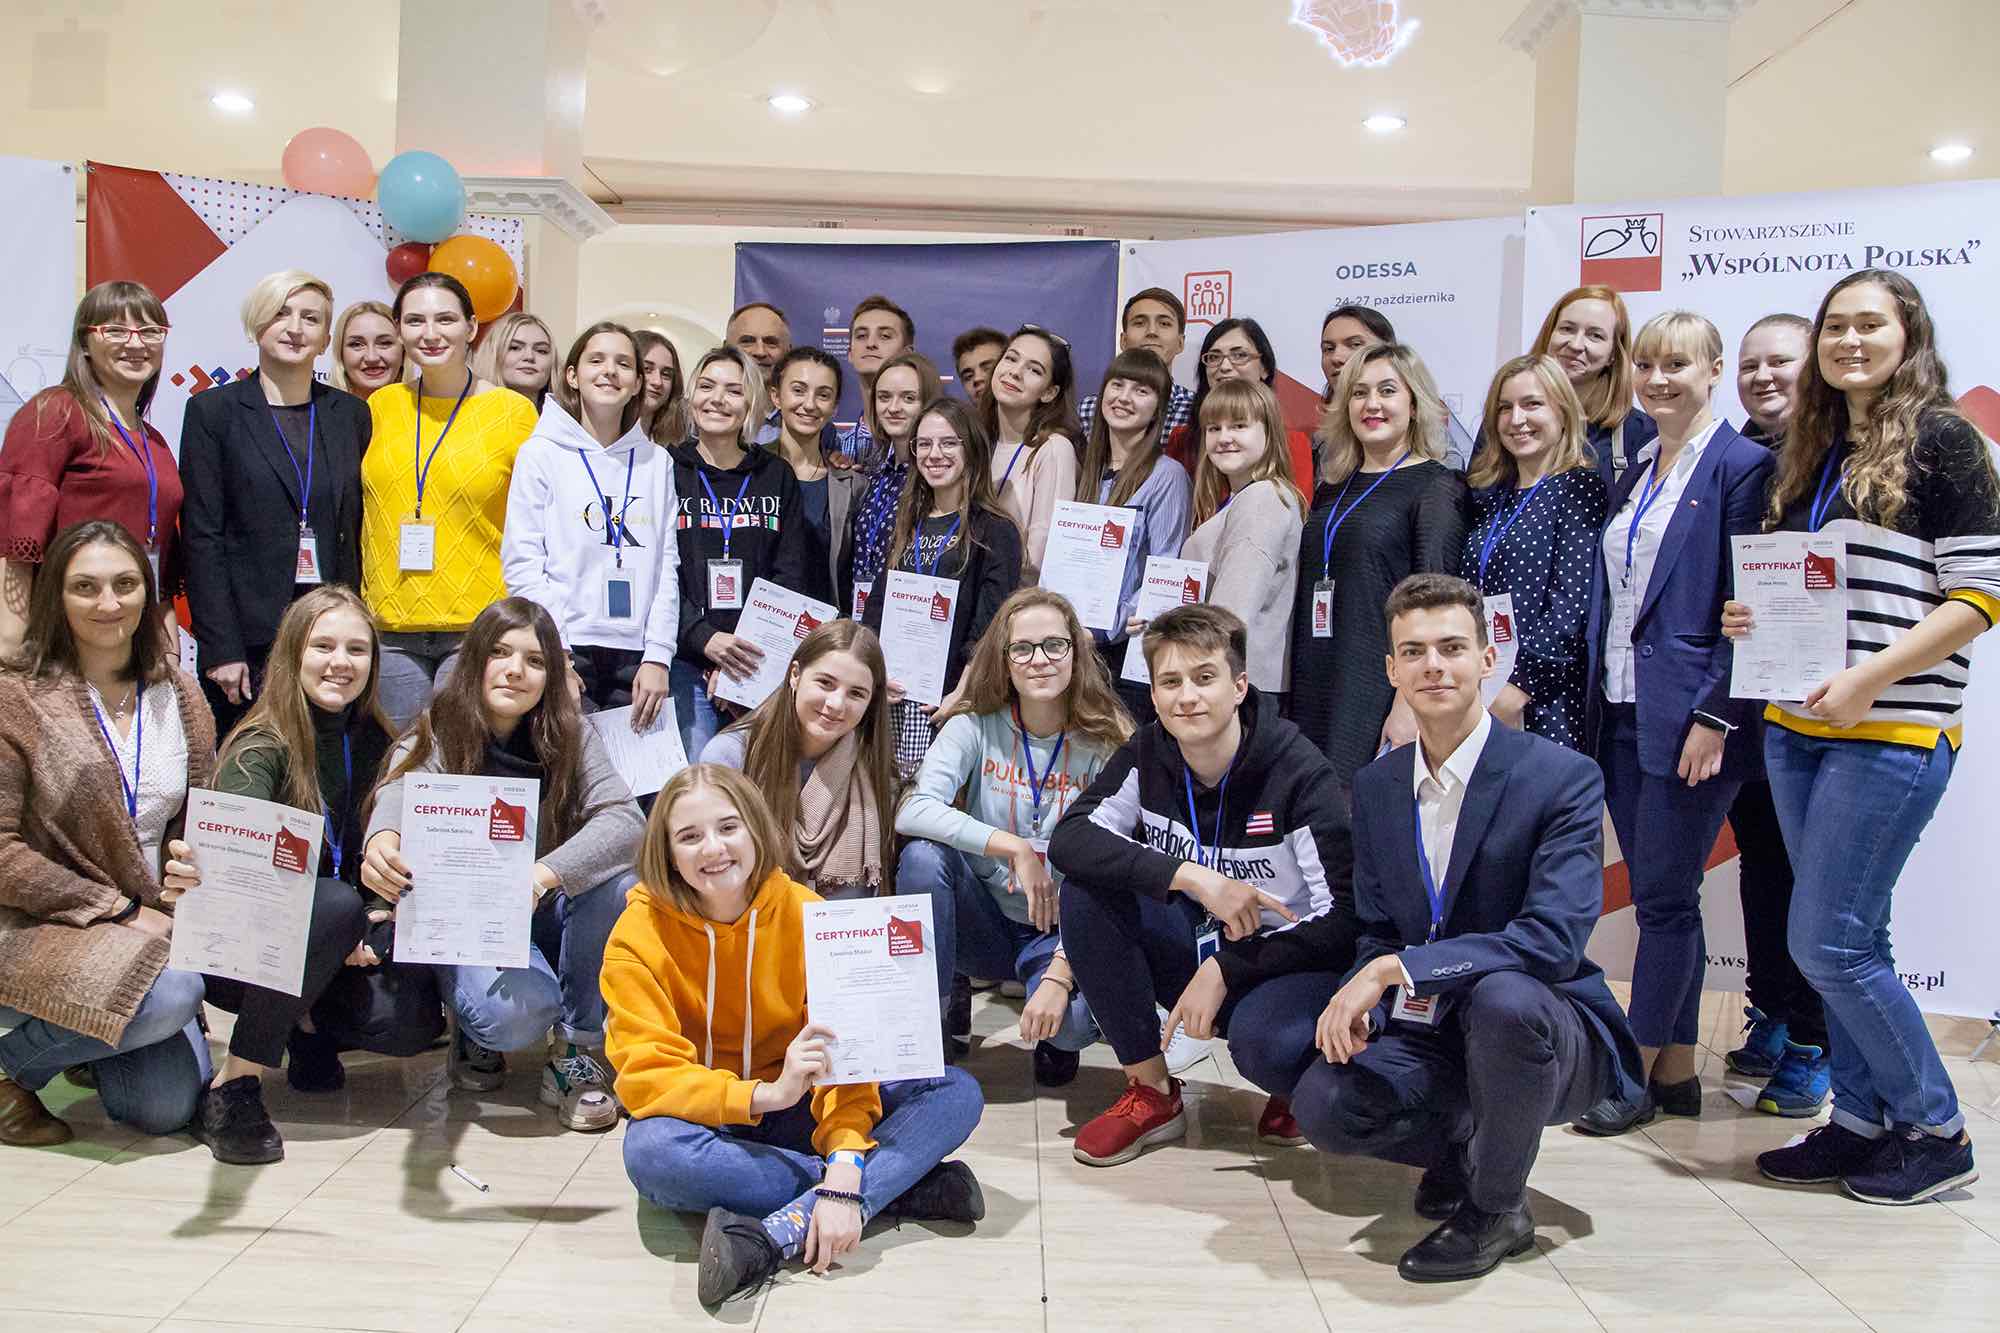 Надихнутися до праці. Форум молодих поляків в Одесі